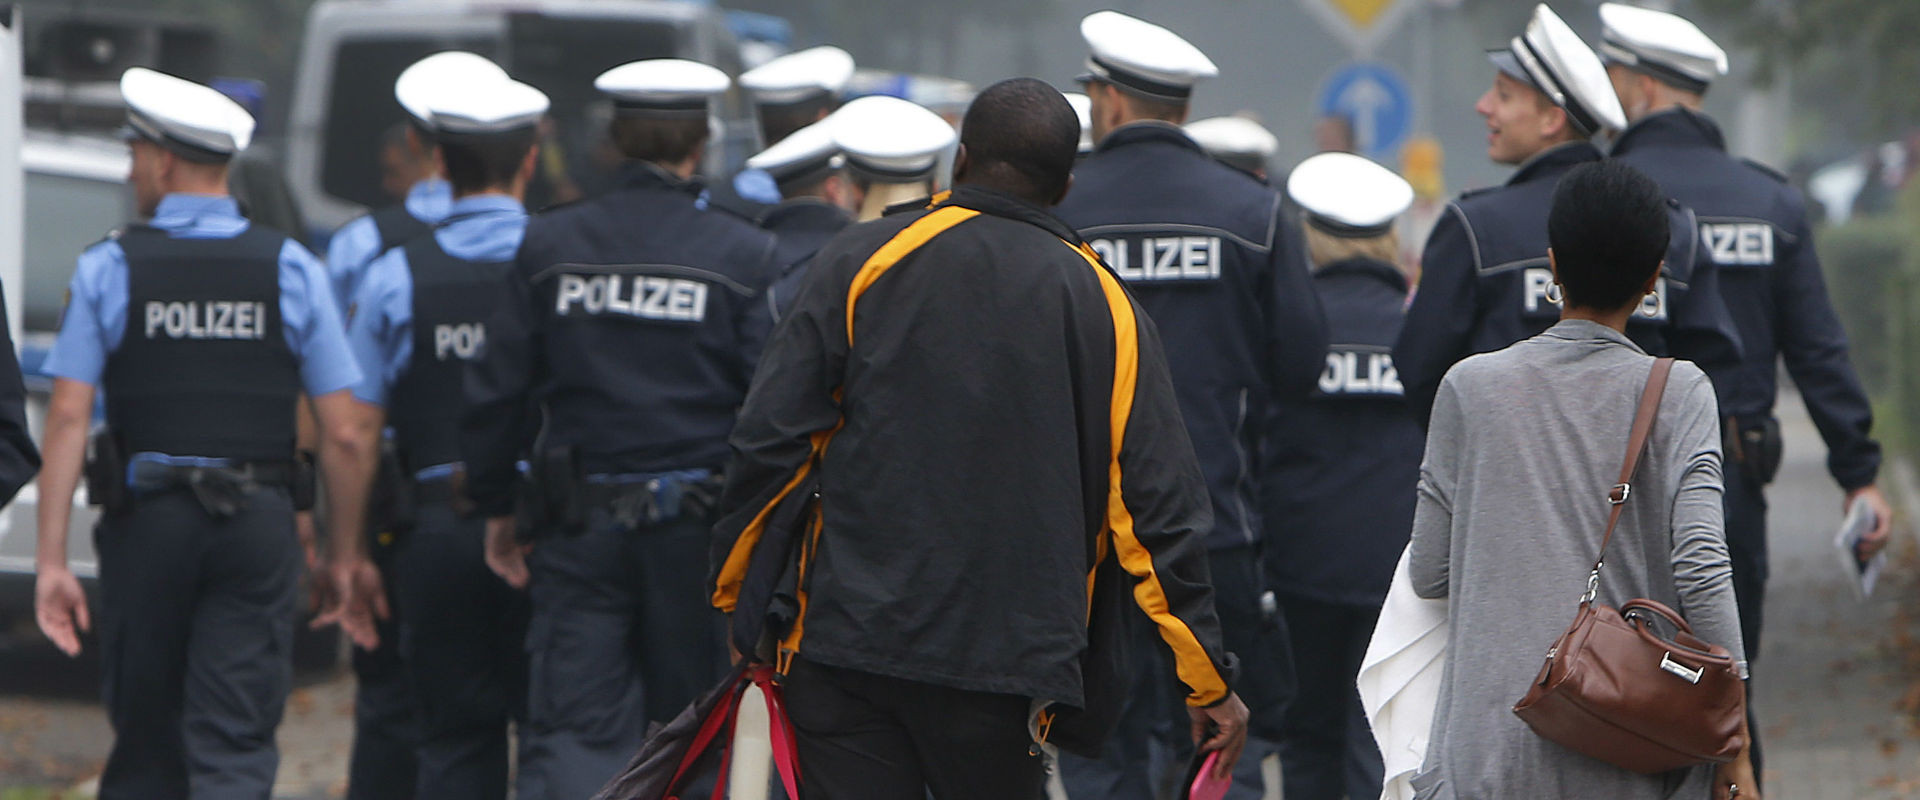 משטרת פרנקפורט באזור בו נמצאה הפצצה